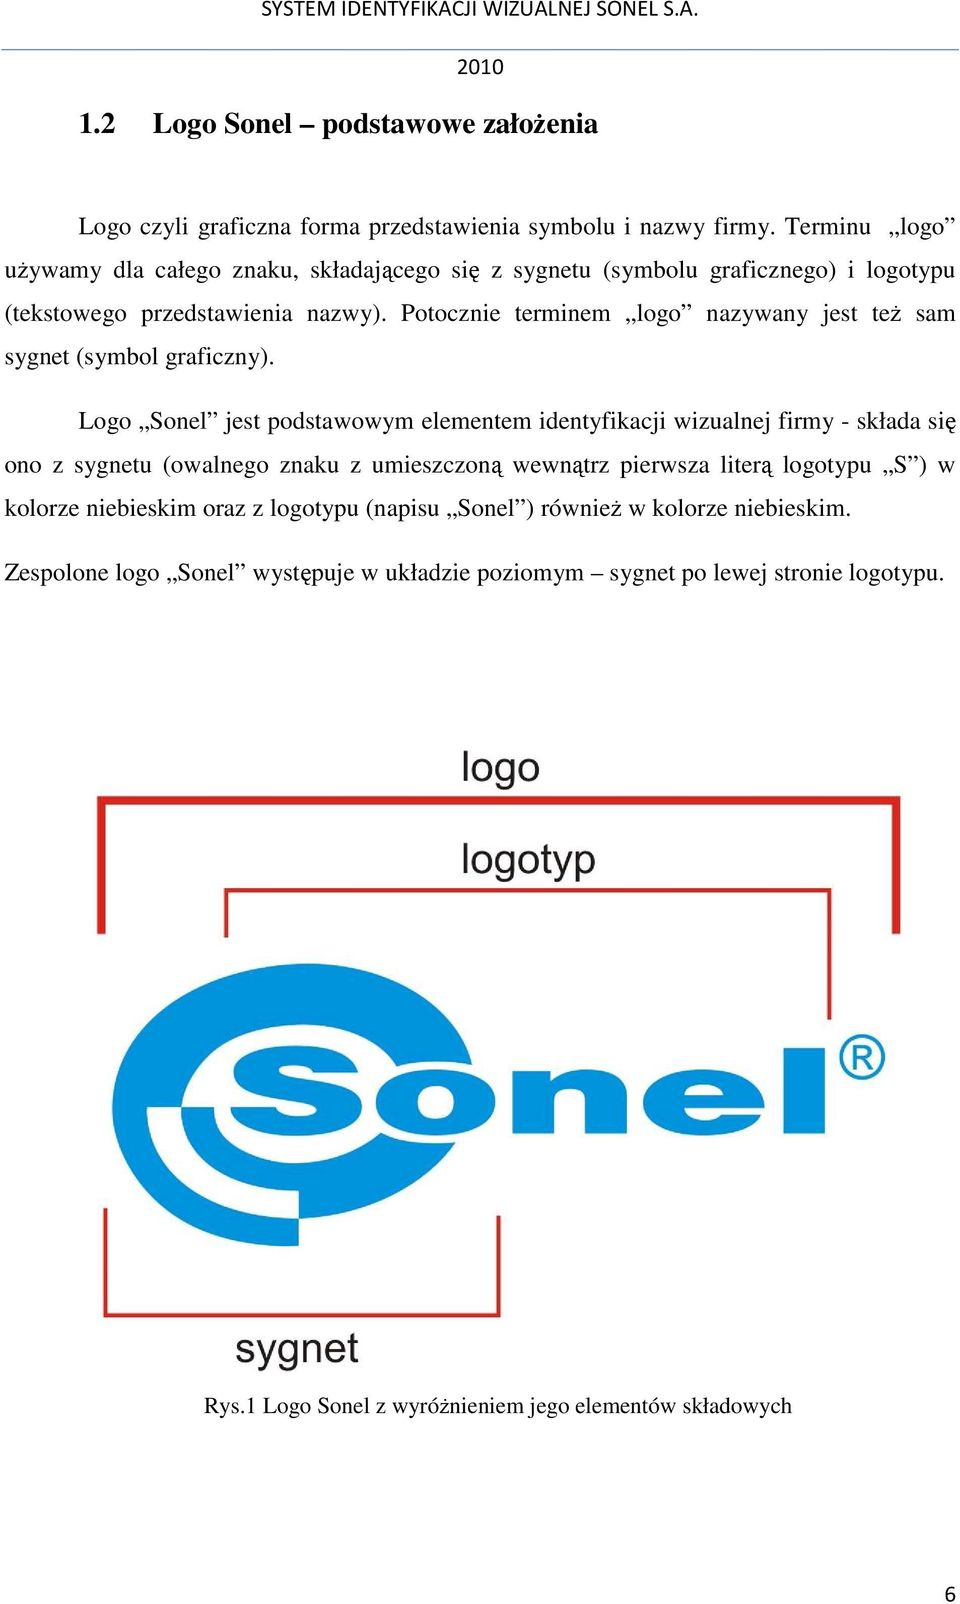 Potocznie terminem logo nazywany jest teŝ sam sygnet (symbol graficzny).